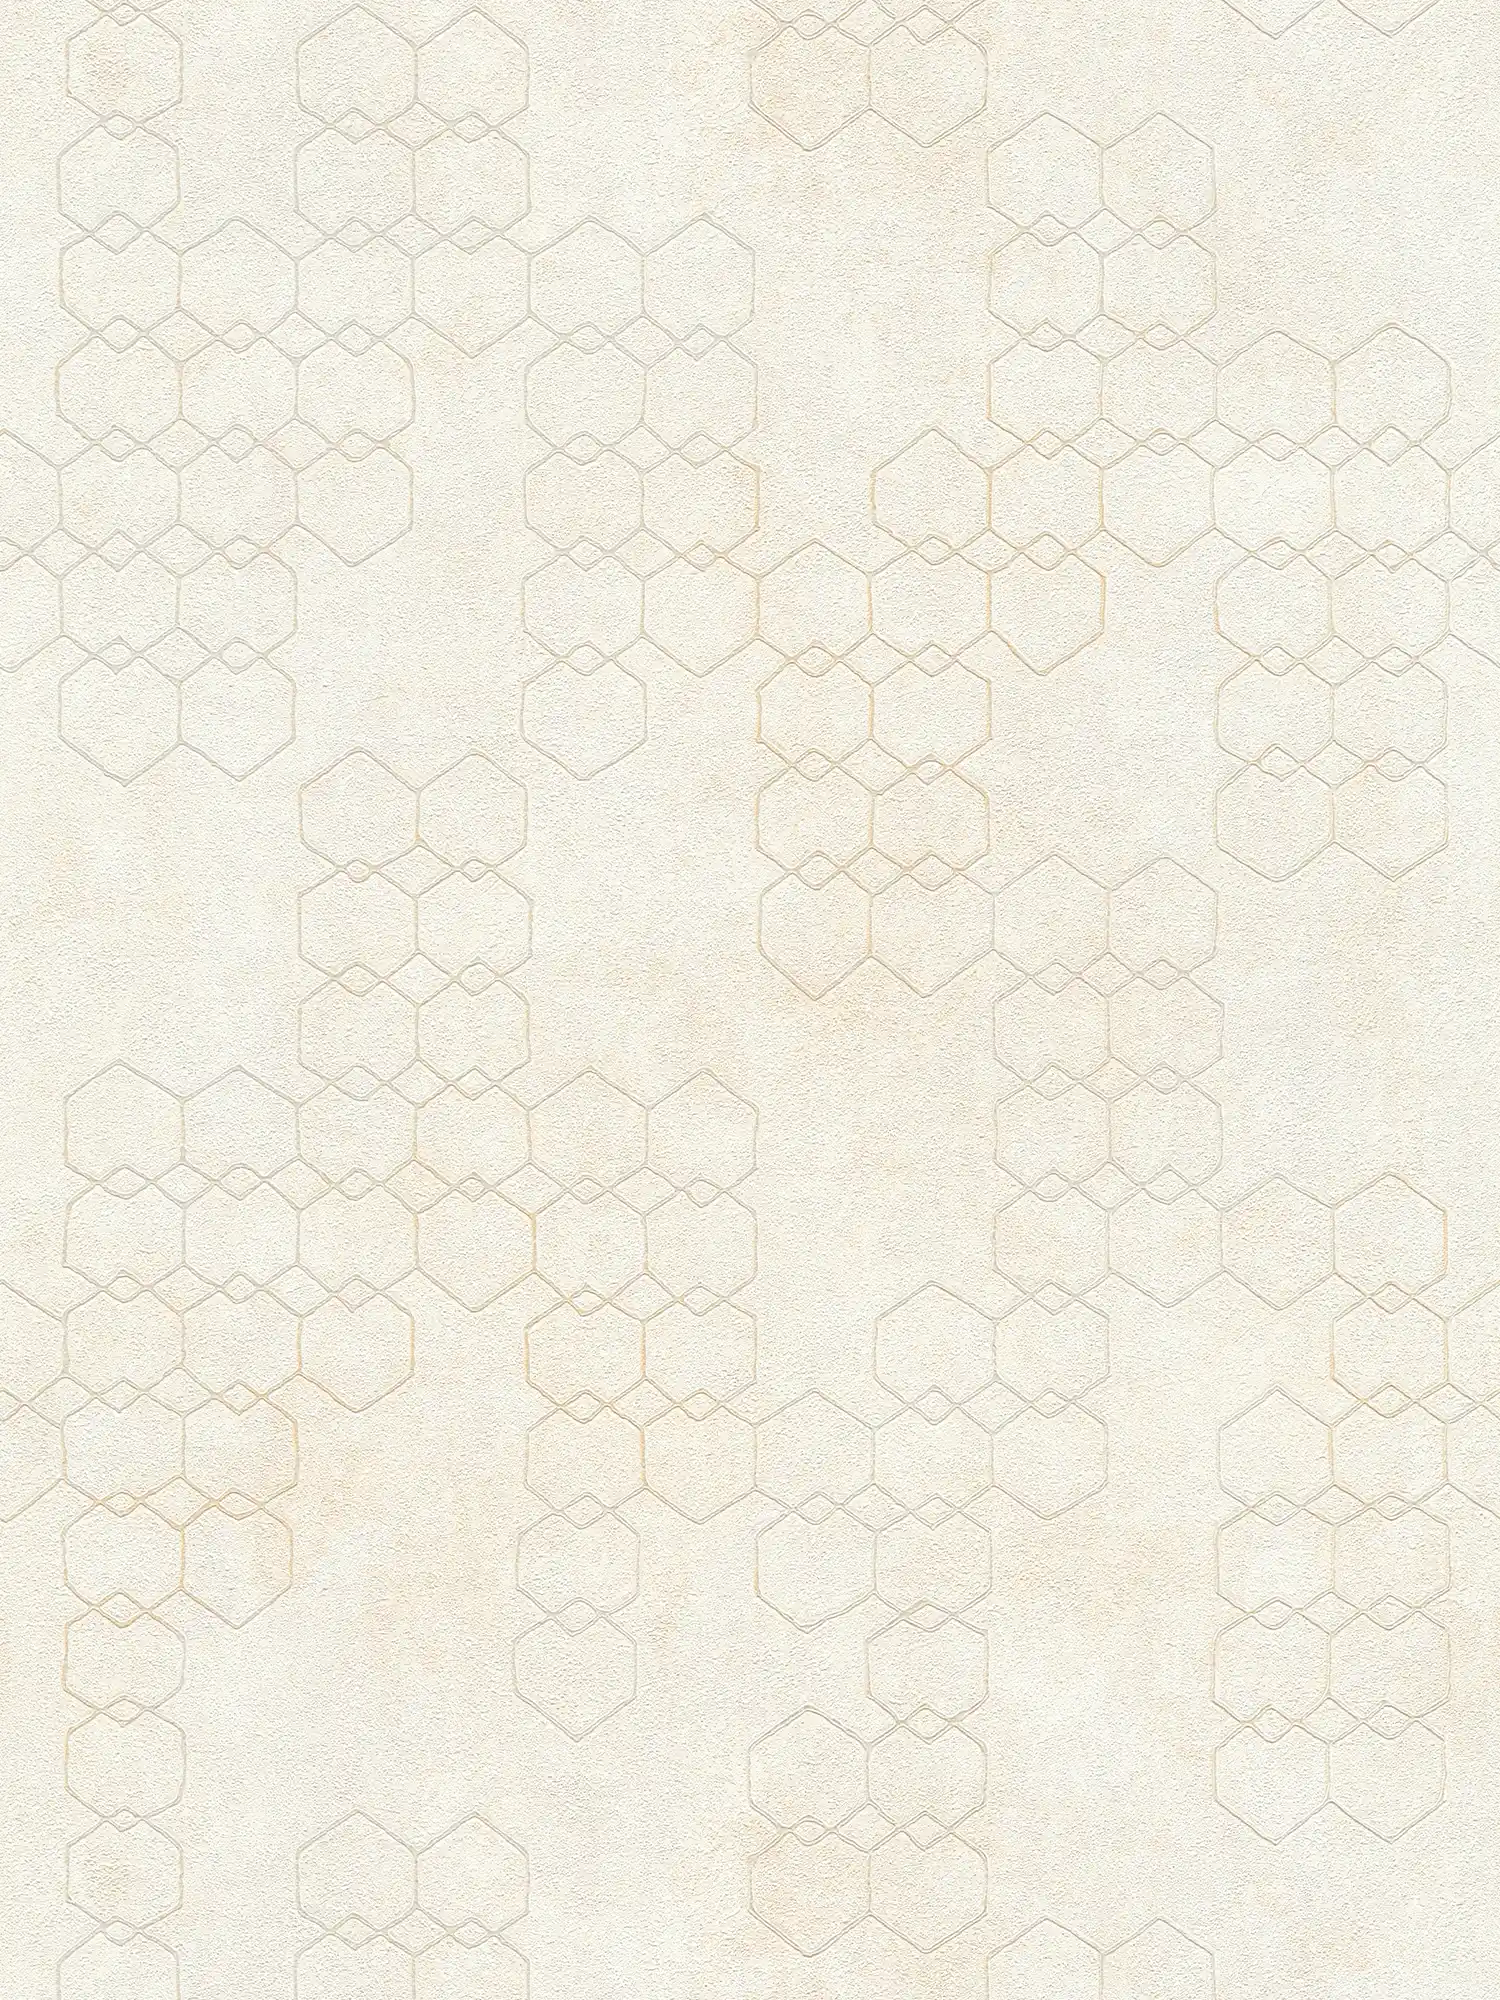 Papier peint à motifs géométriques de style industriel - crème, gris, blanc
